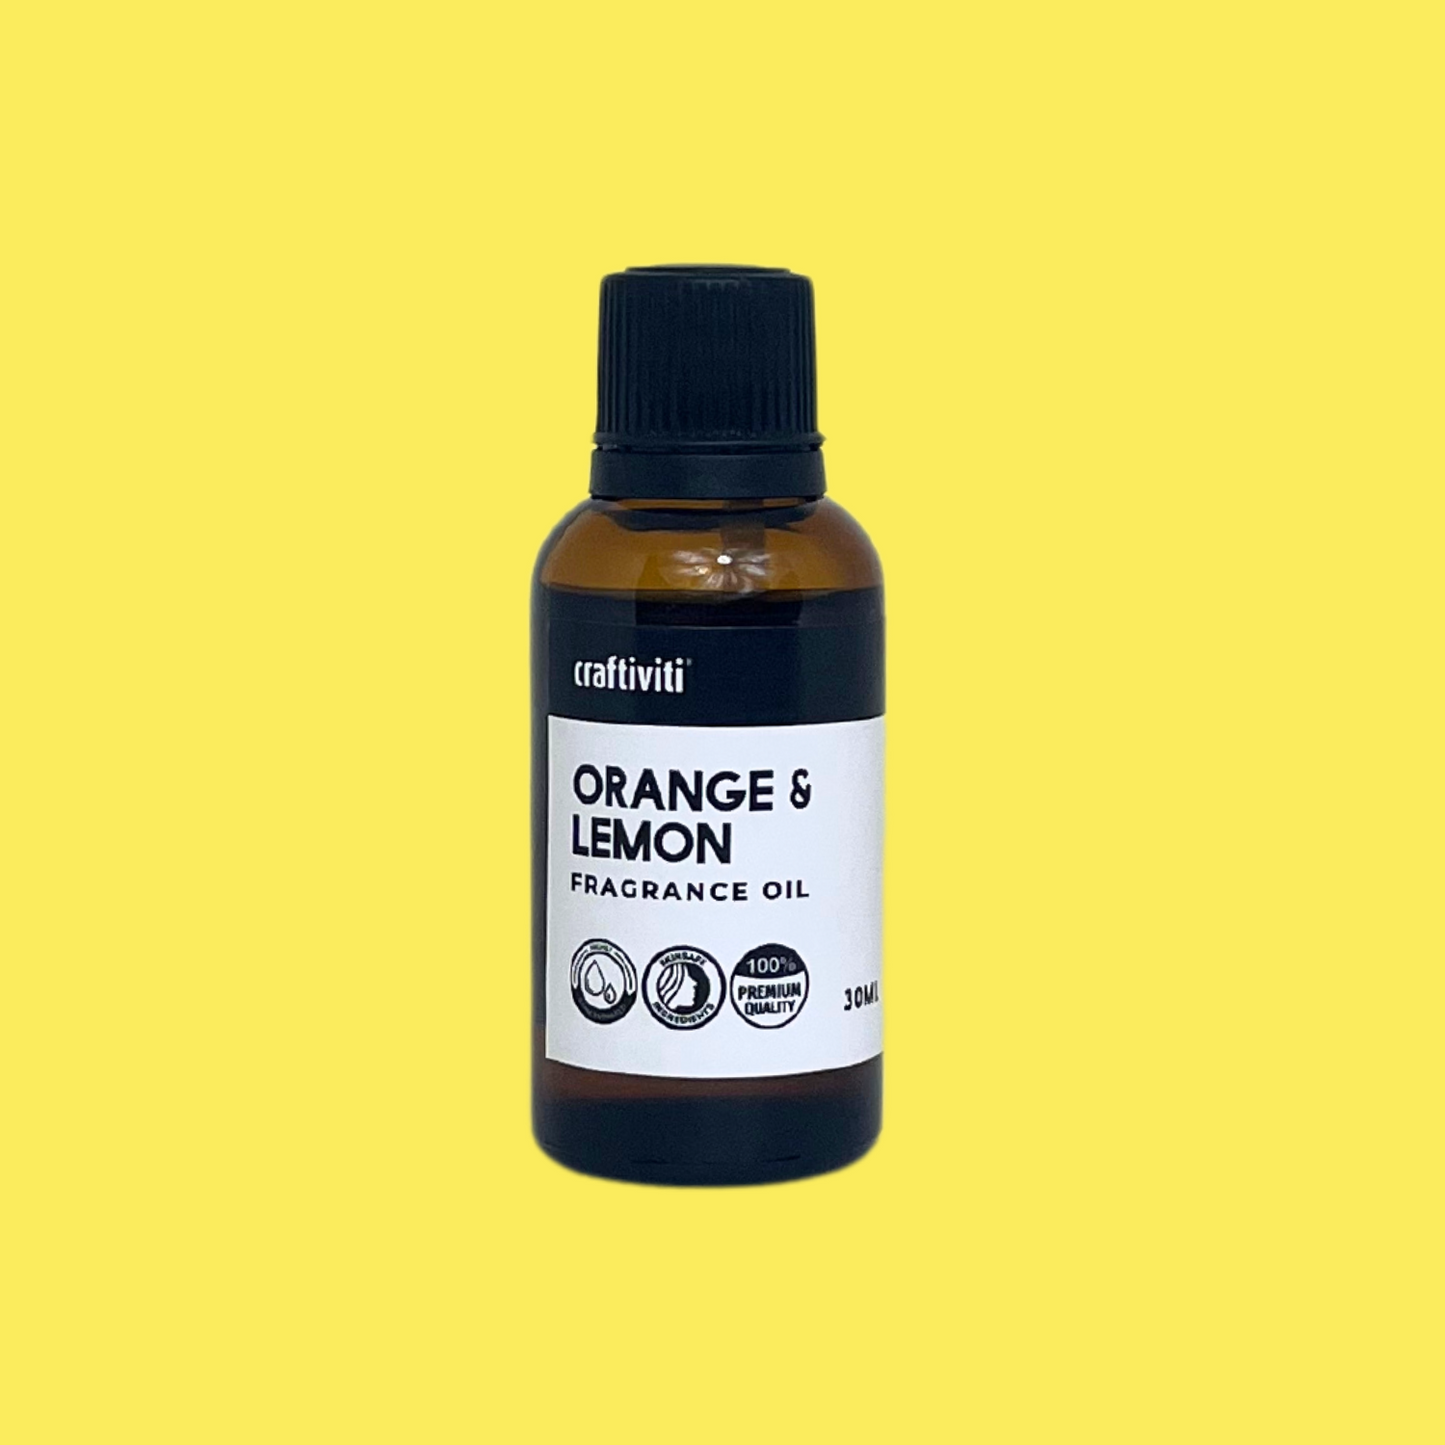 Orange & Lemon Fragrance Oil